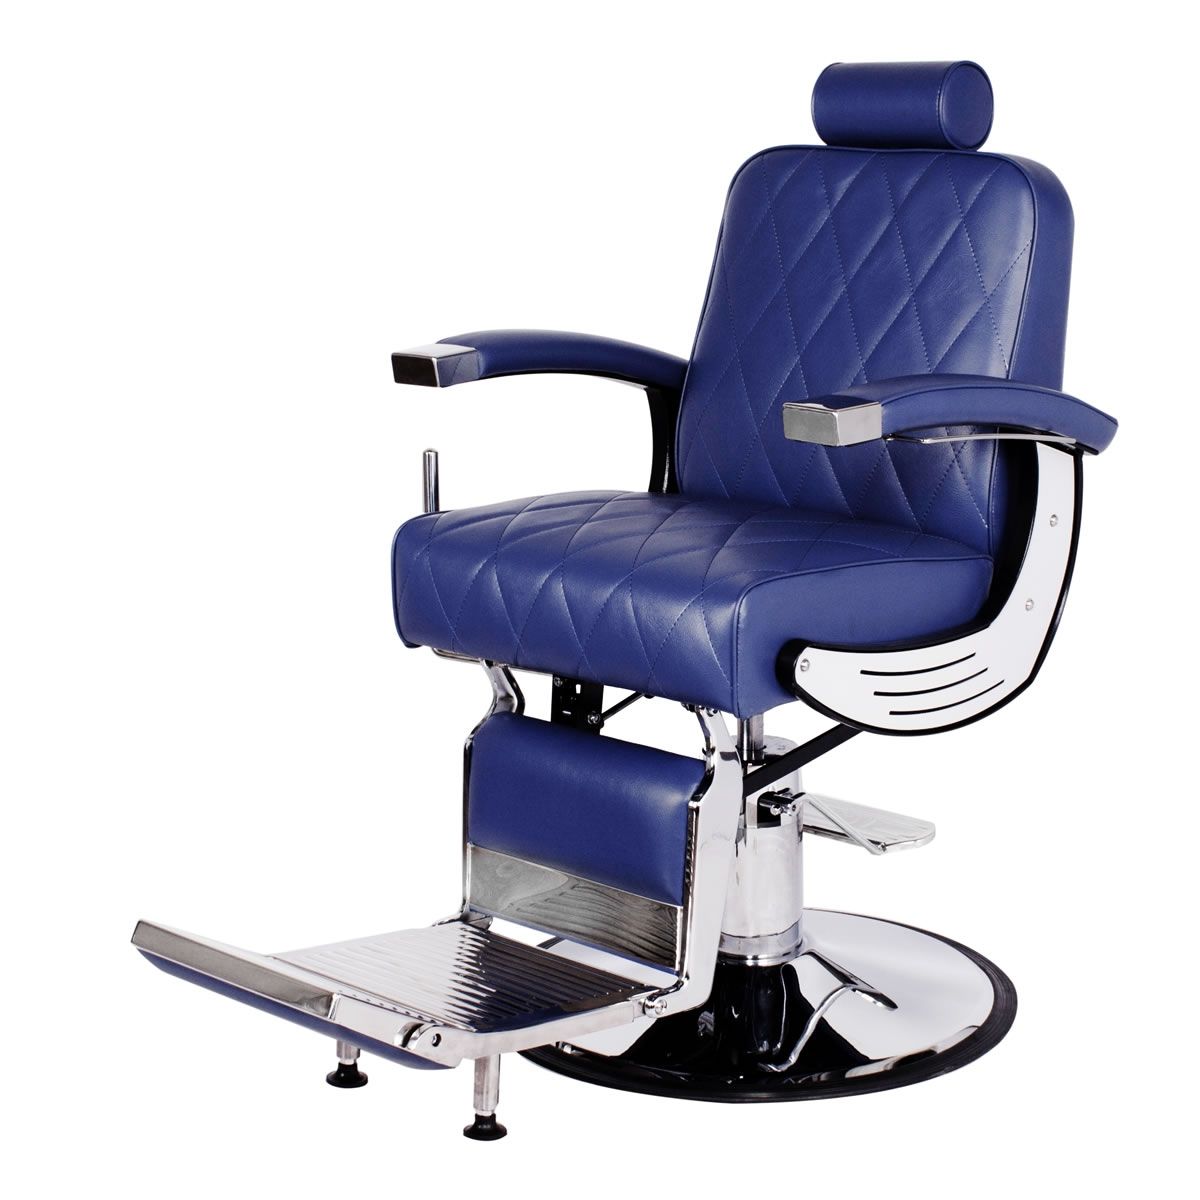 BARON Barber Chair